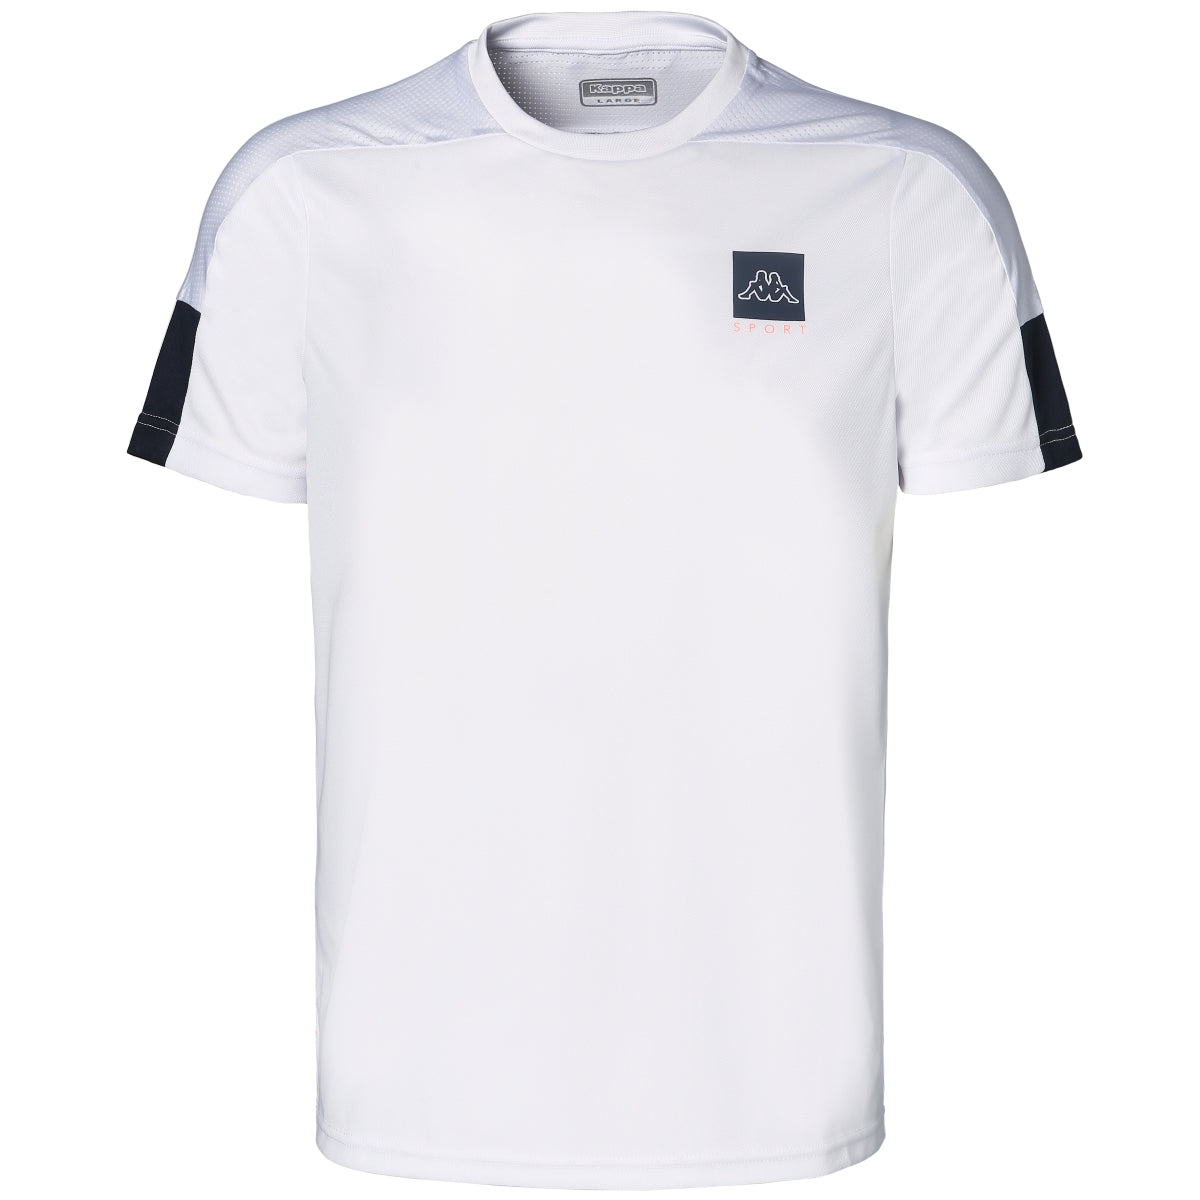 T-shirt Imparo Blanc homme - Image 1